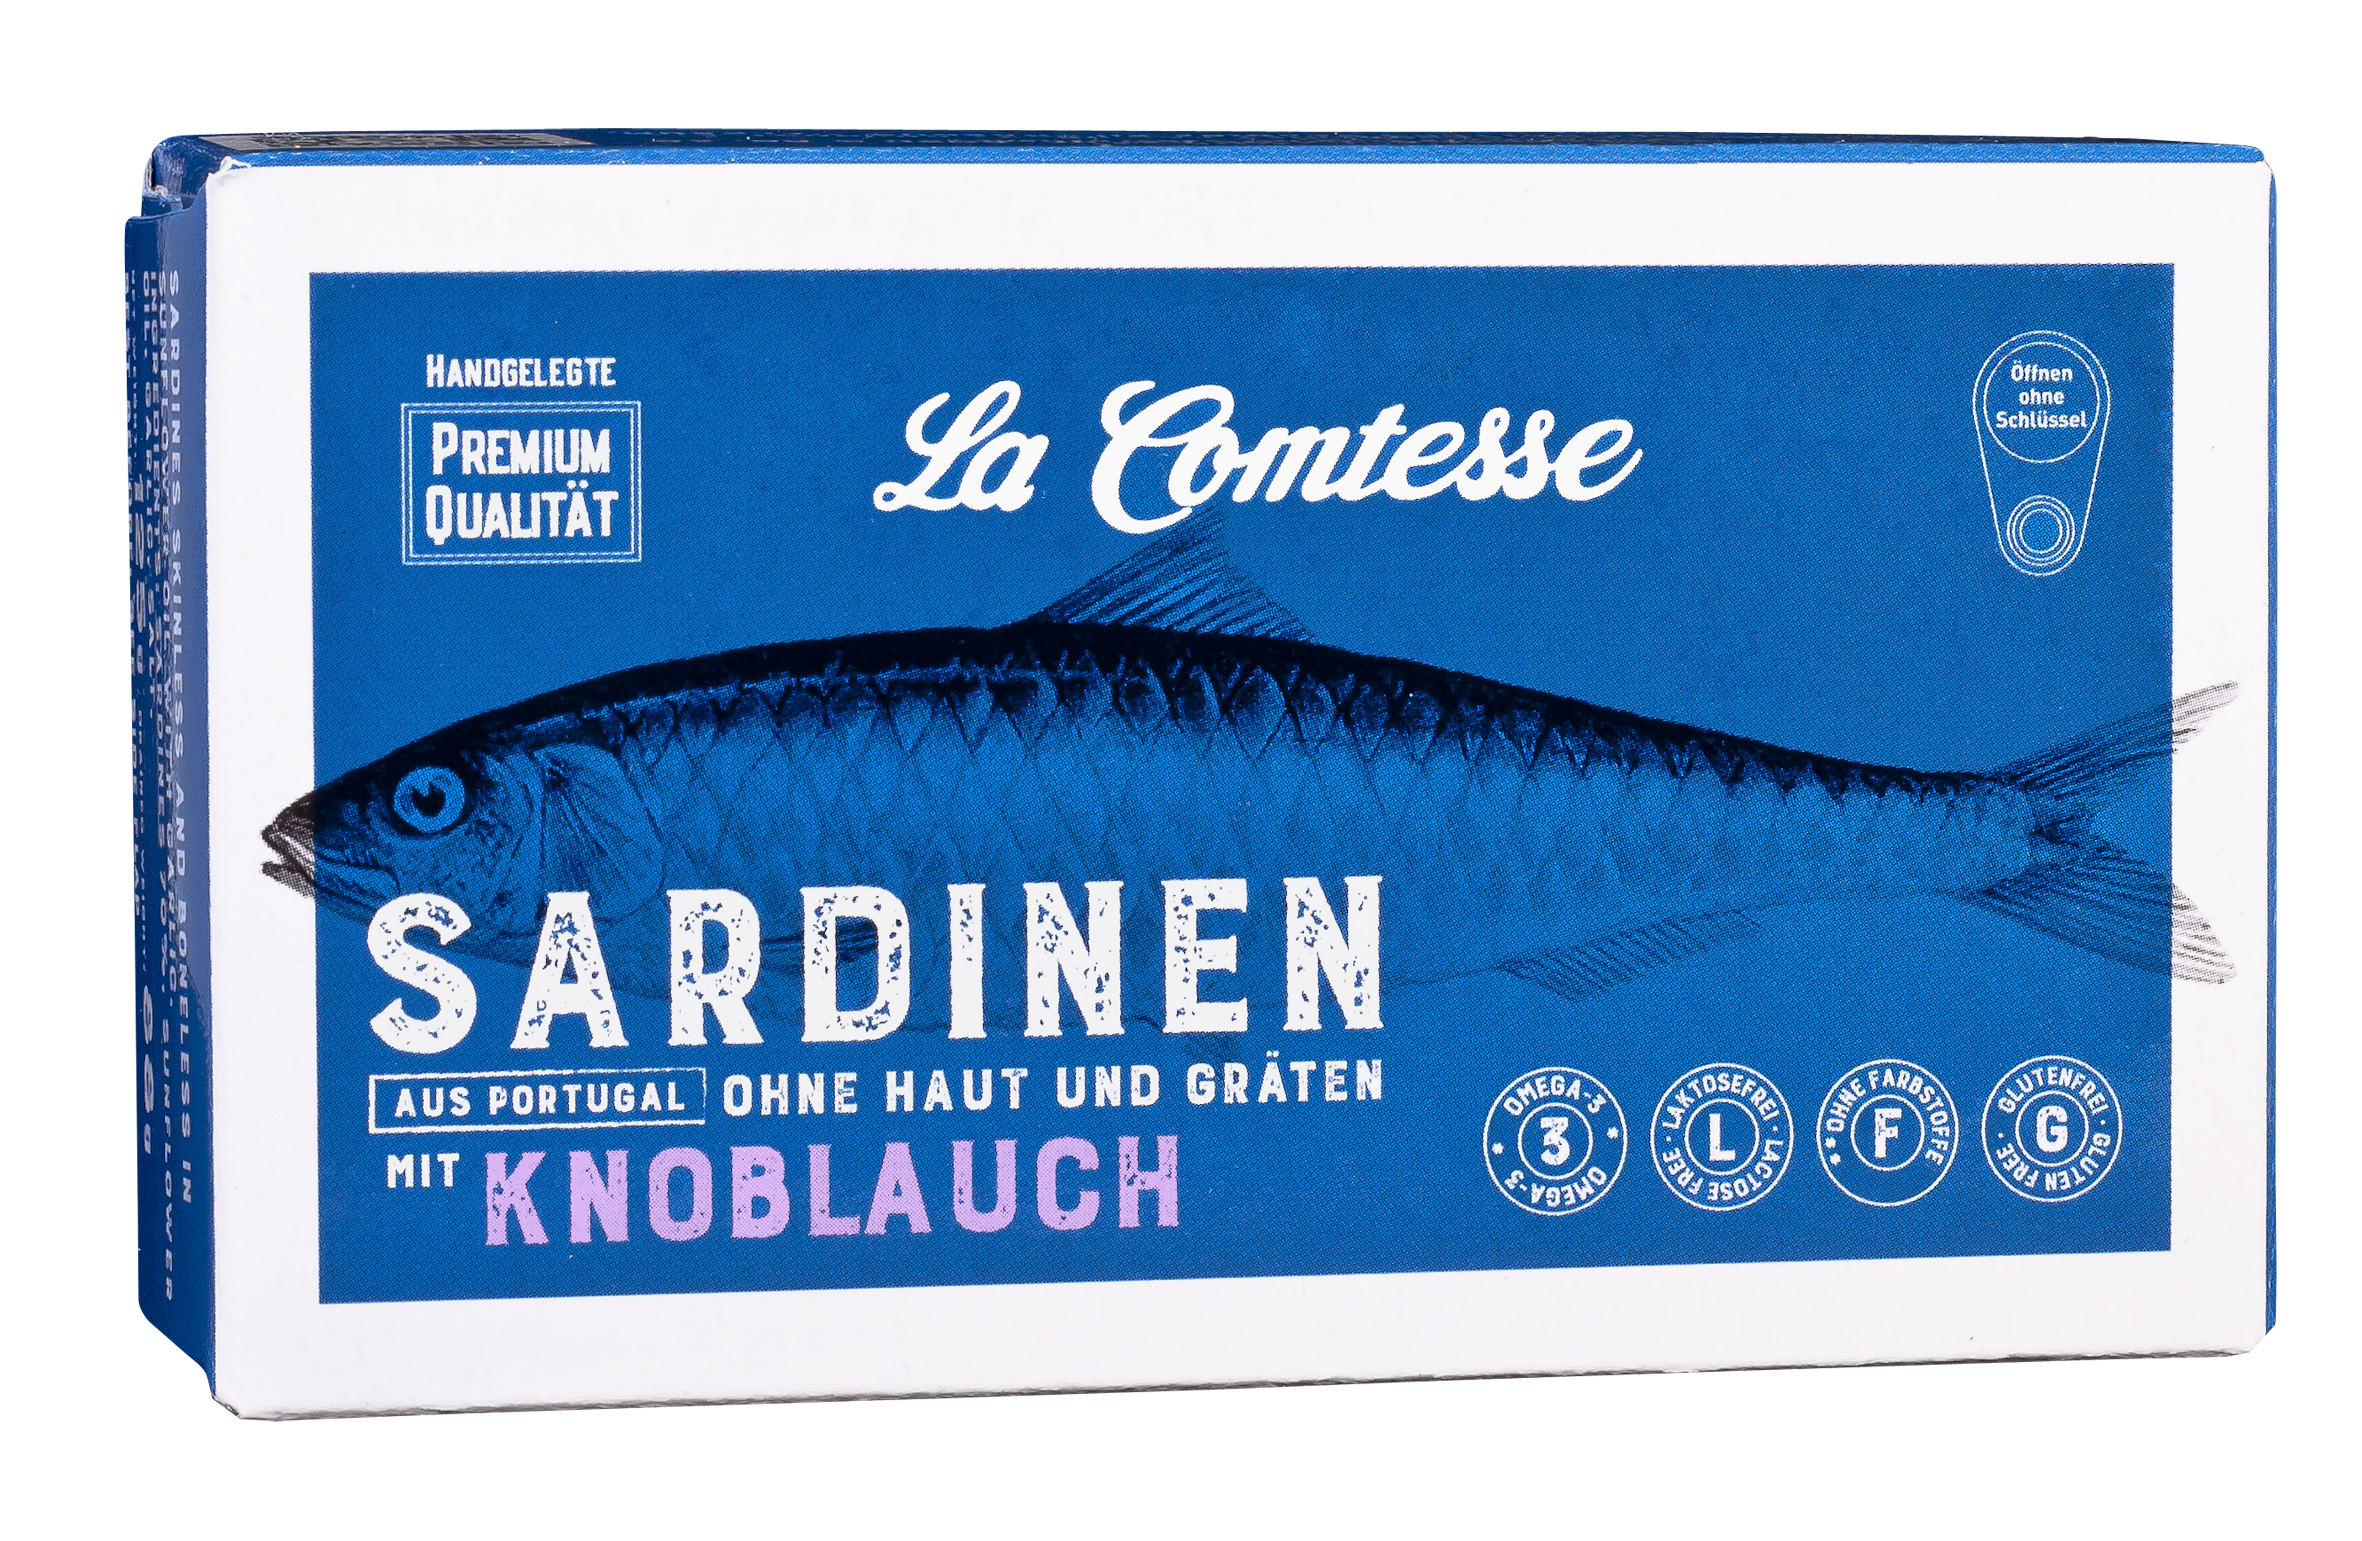  Sardinen mit KnoblauchnTNocEHYgxsx